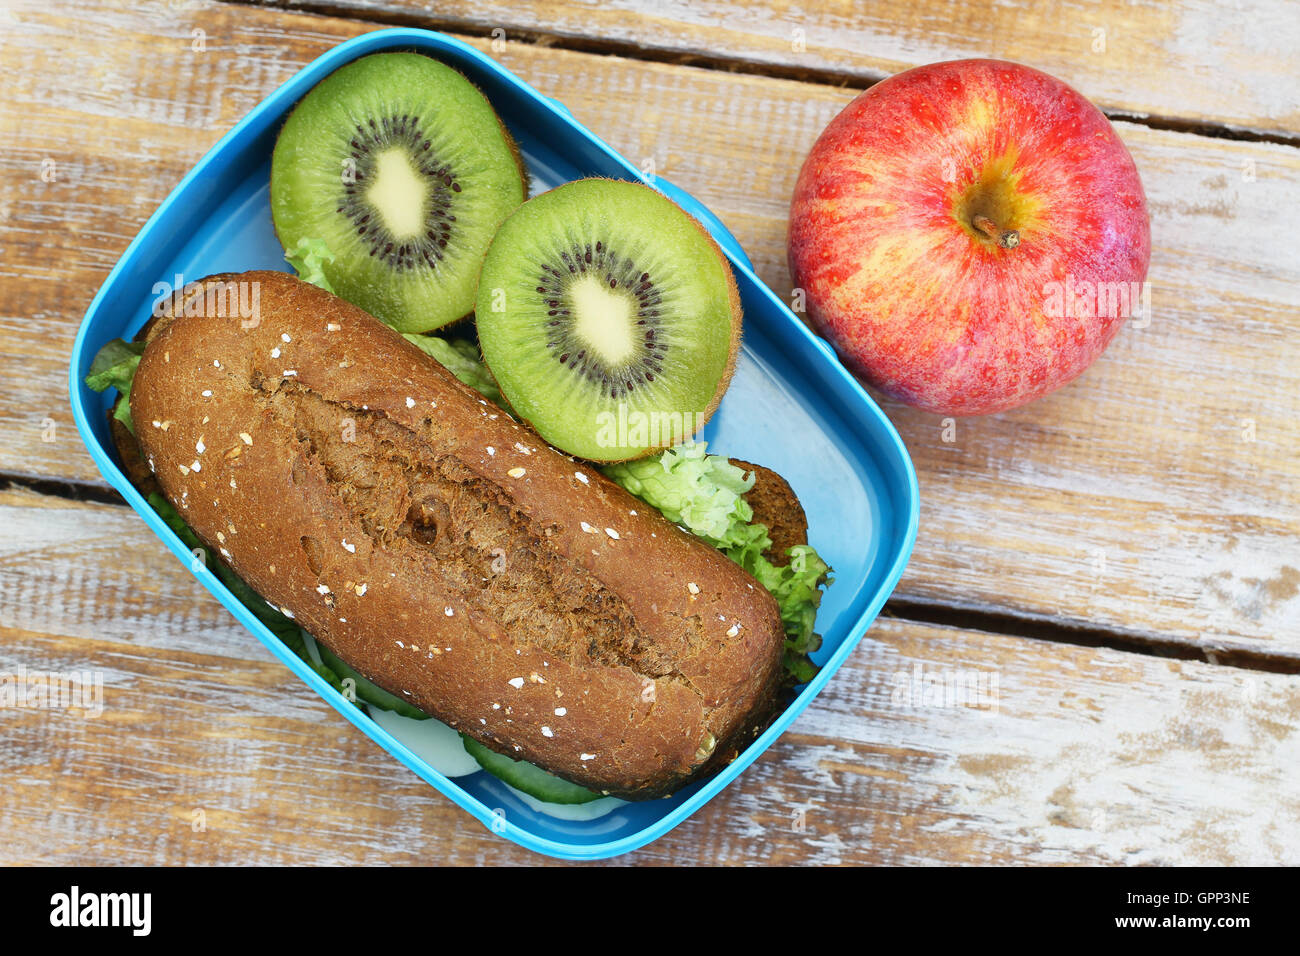 Almuerzo empacado con pan sandwich, kiwi y manzana en la superficie de madera rústica Foto de stock